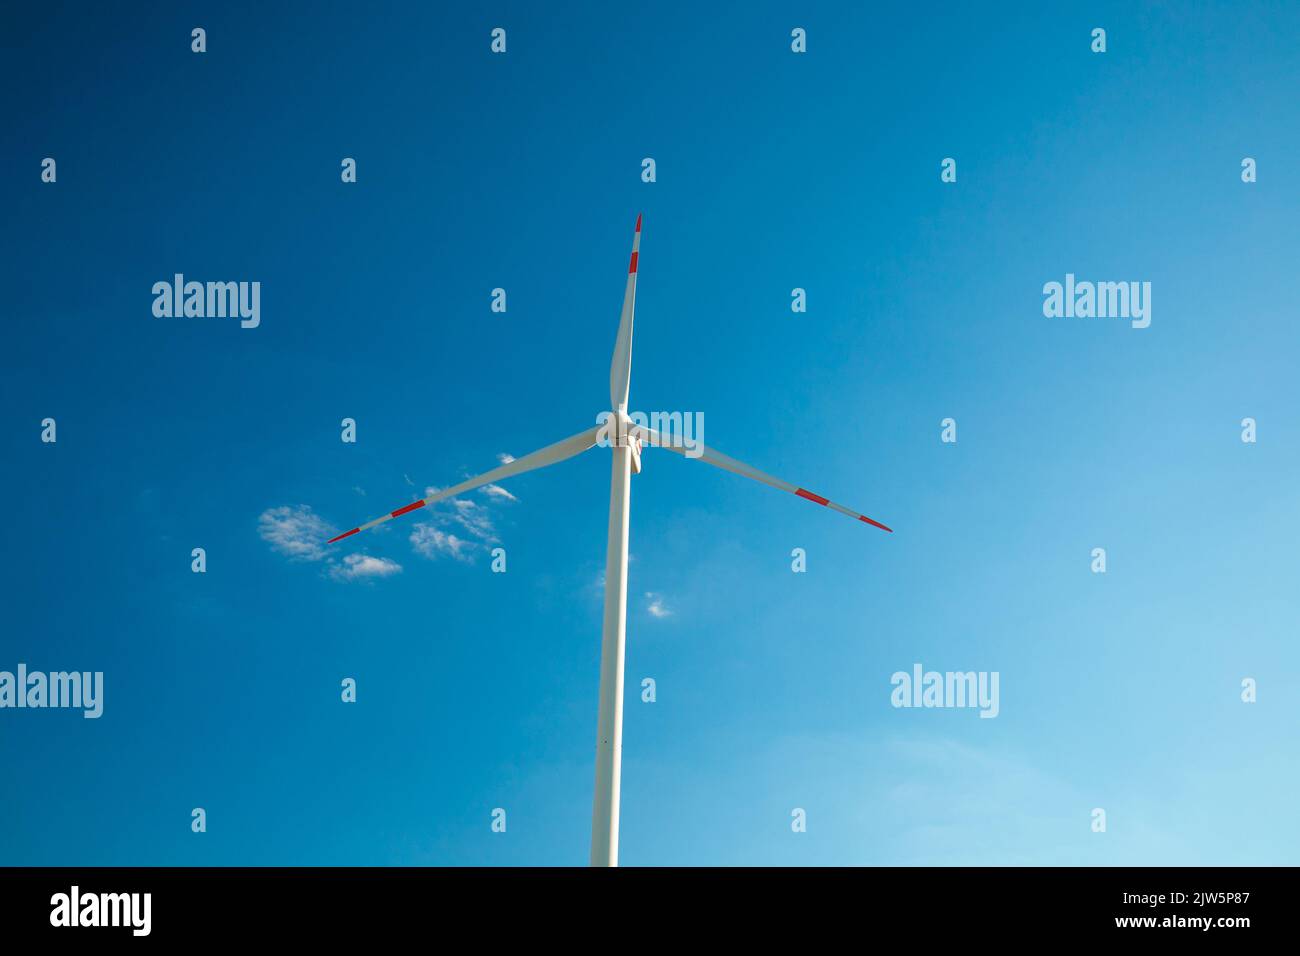 Windgenerator auf einem blauen Himmel Hintergrund.natürliche Energie.Alternative natürliche Energiequelle. Erneuerbare Energiekosten.Windmühle erneuerbare Energie. Stockfoto